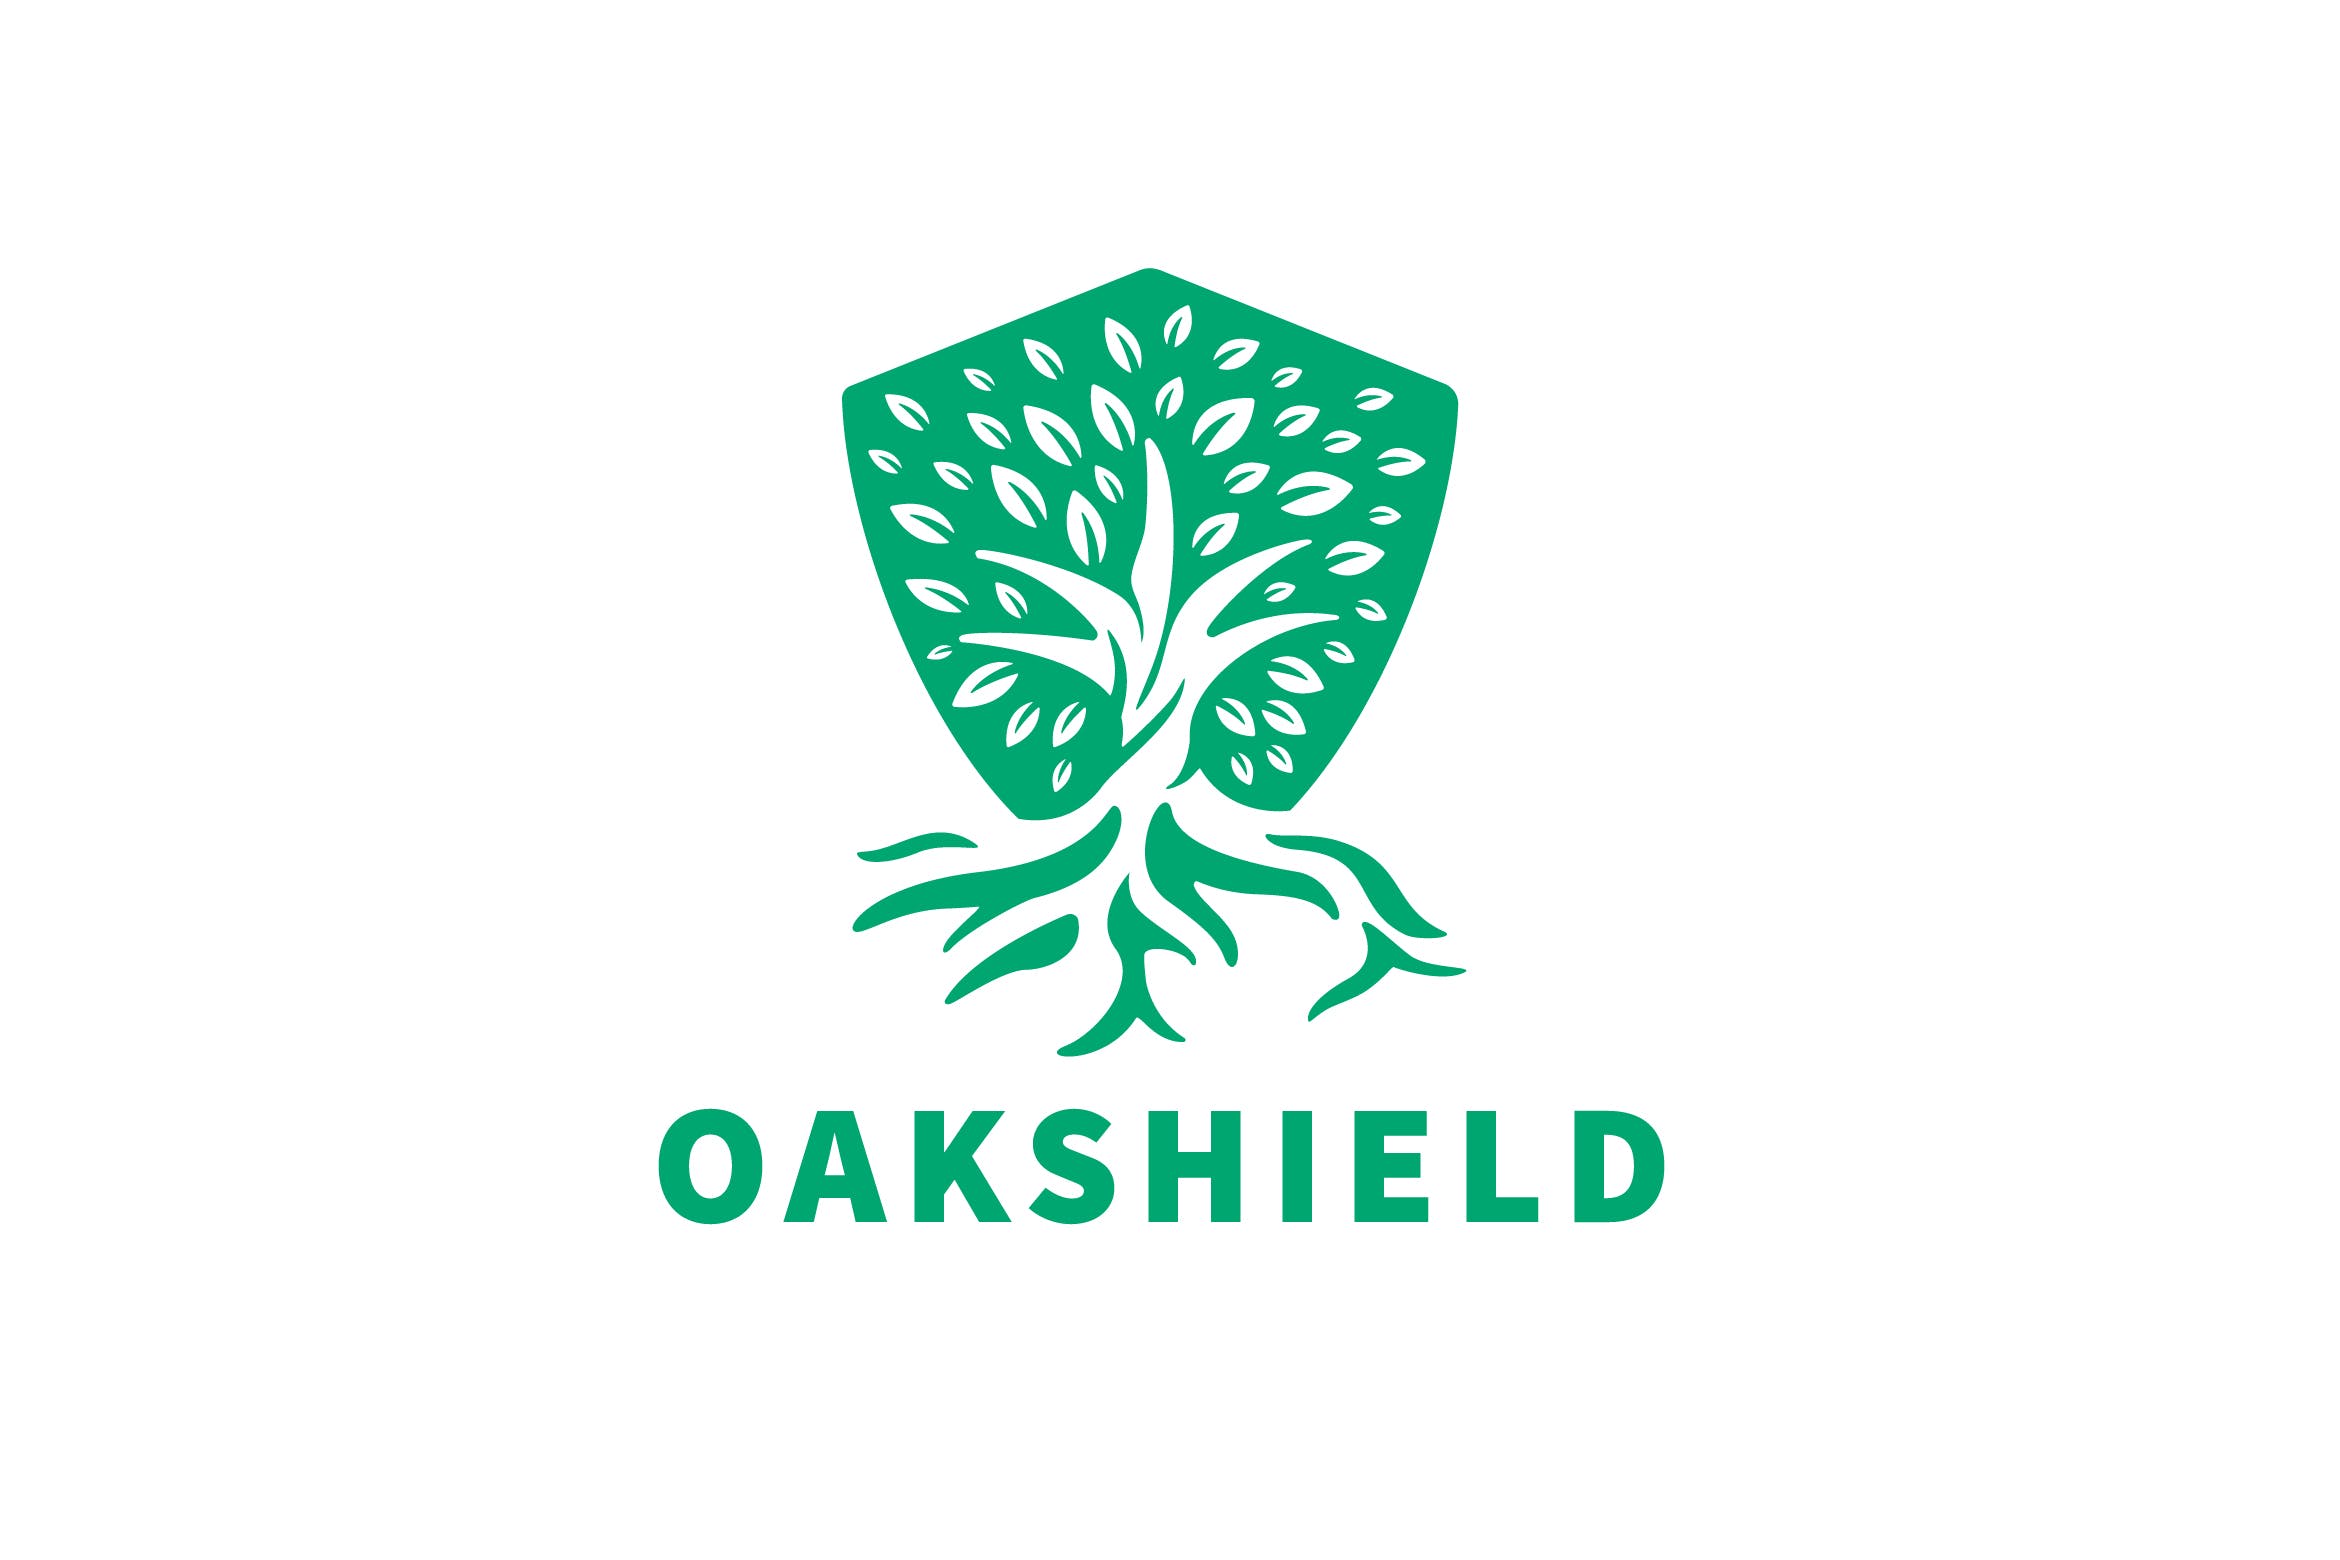 负空间设计风格橡木盾几何图形Logo设计非凡图库精选模板 Oak Shield Negative Space Logo插图